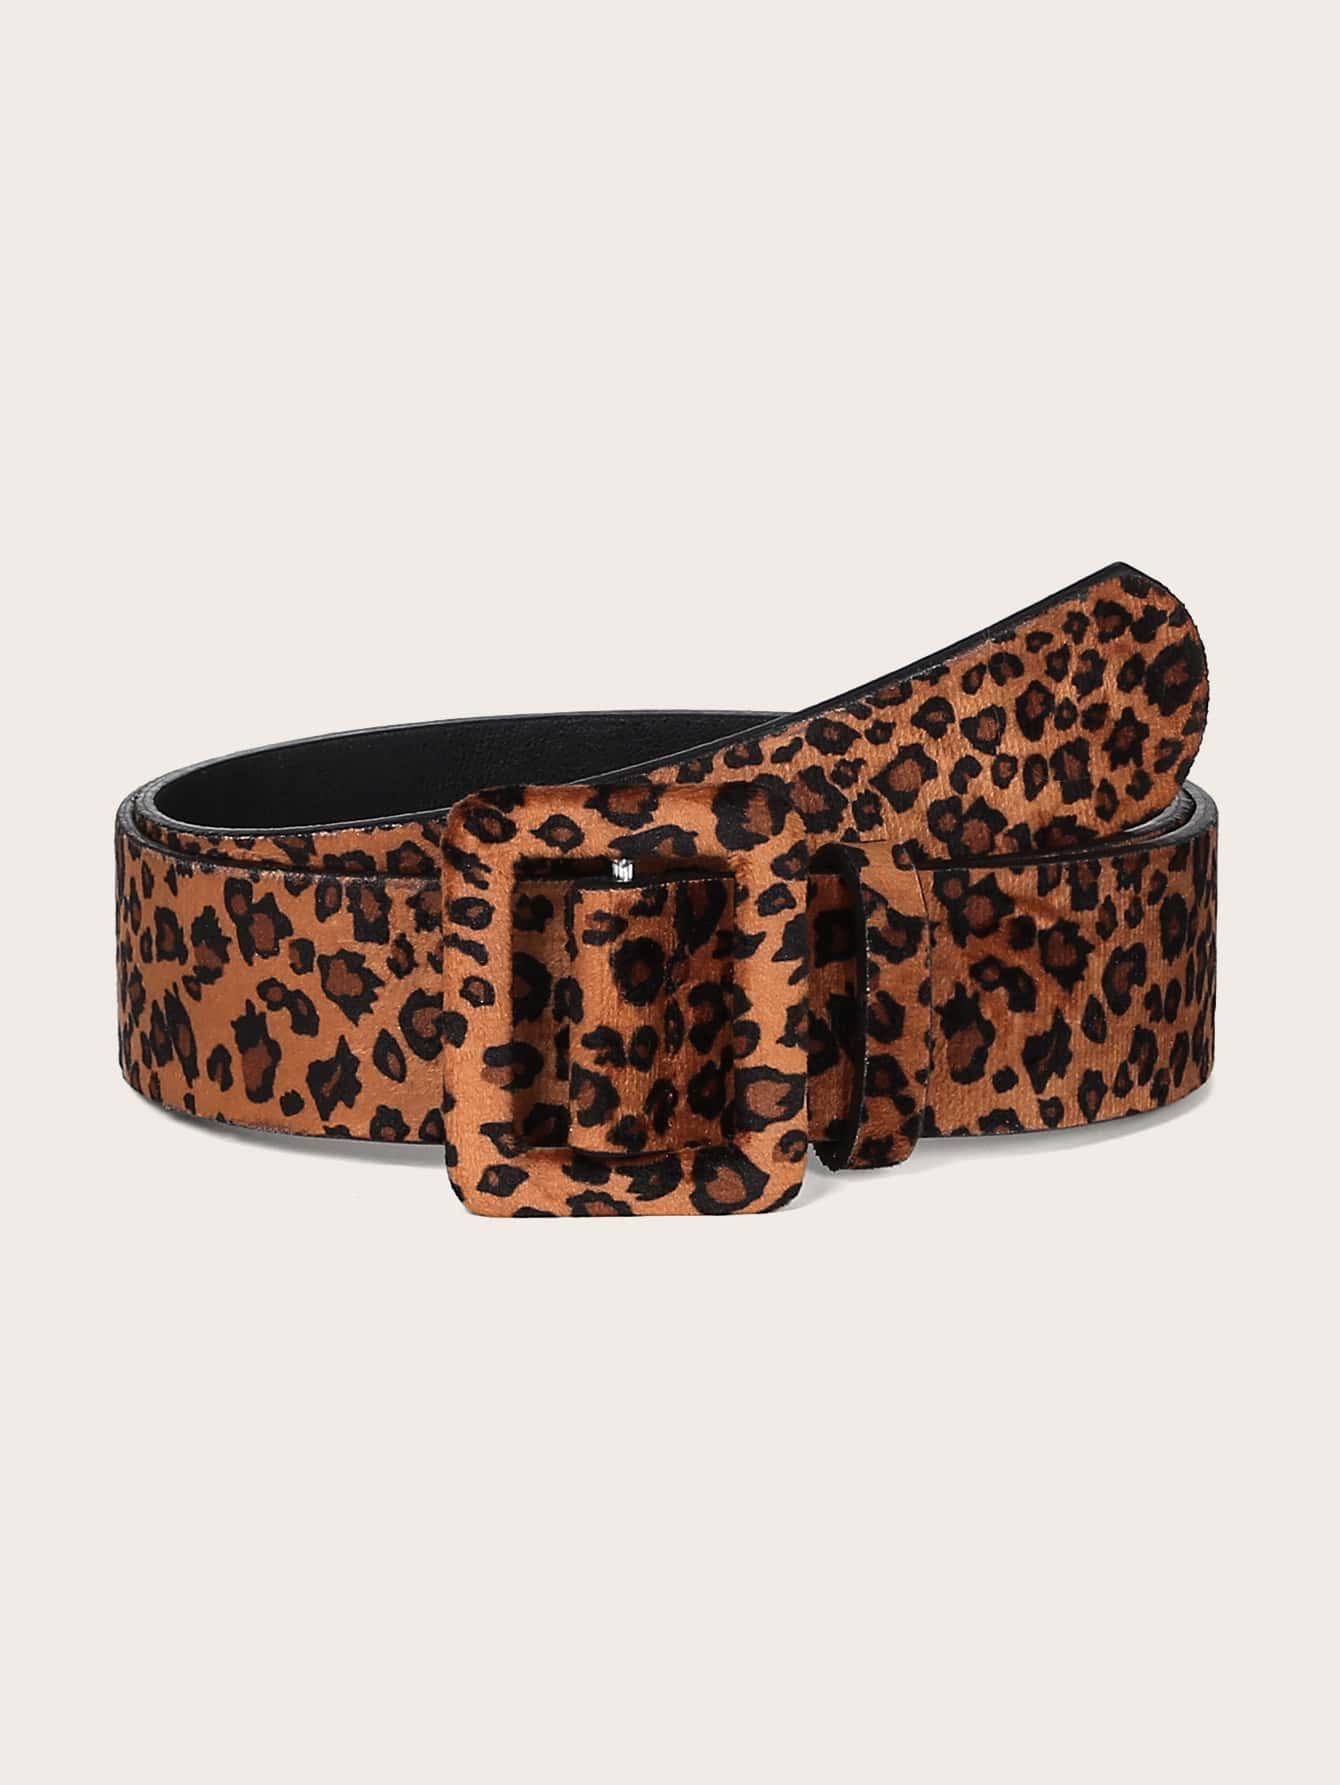 Ремень со змеиным принтом ярких цветов в стиле панк и перфоратор для джинсов, многоцветный пушистый рюкзак с леопардовым узором коричневый